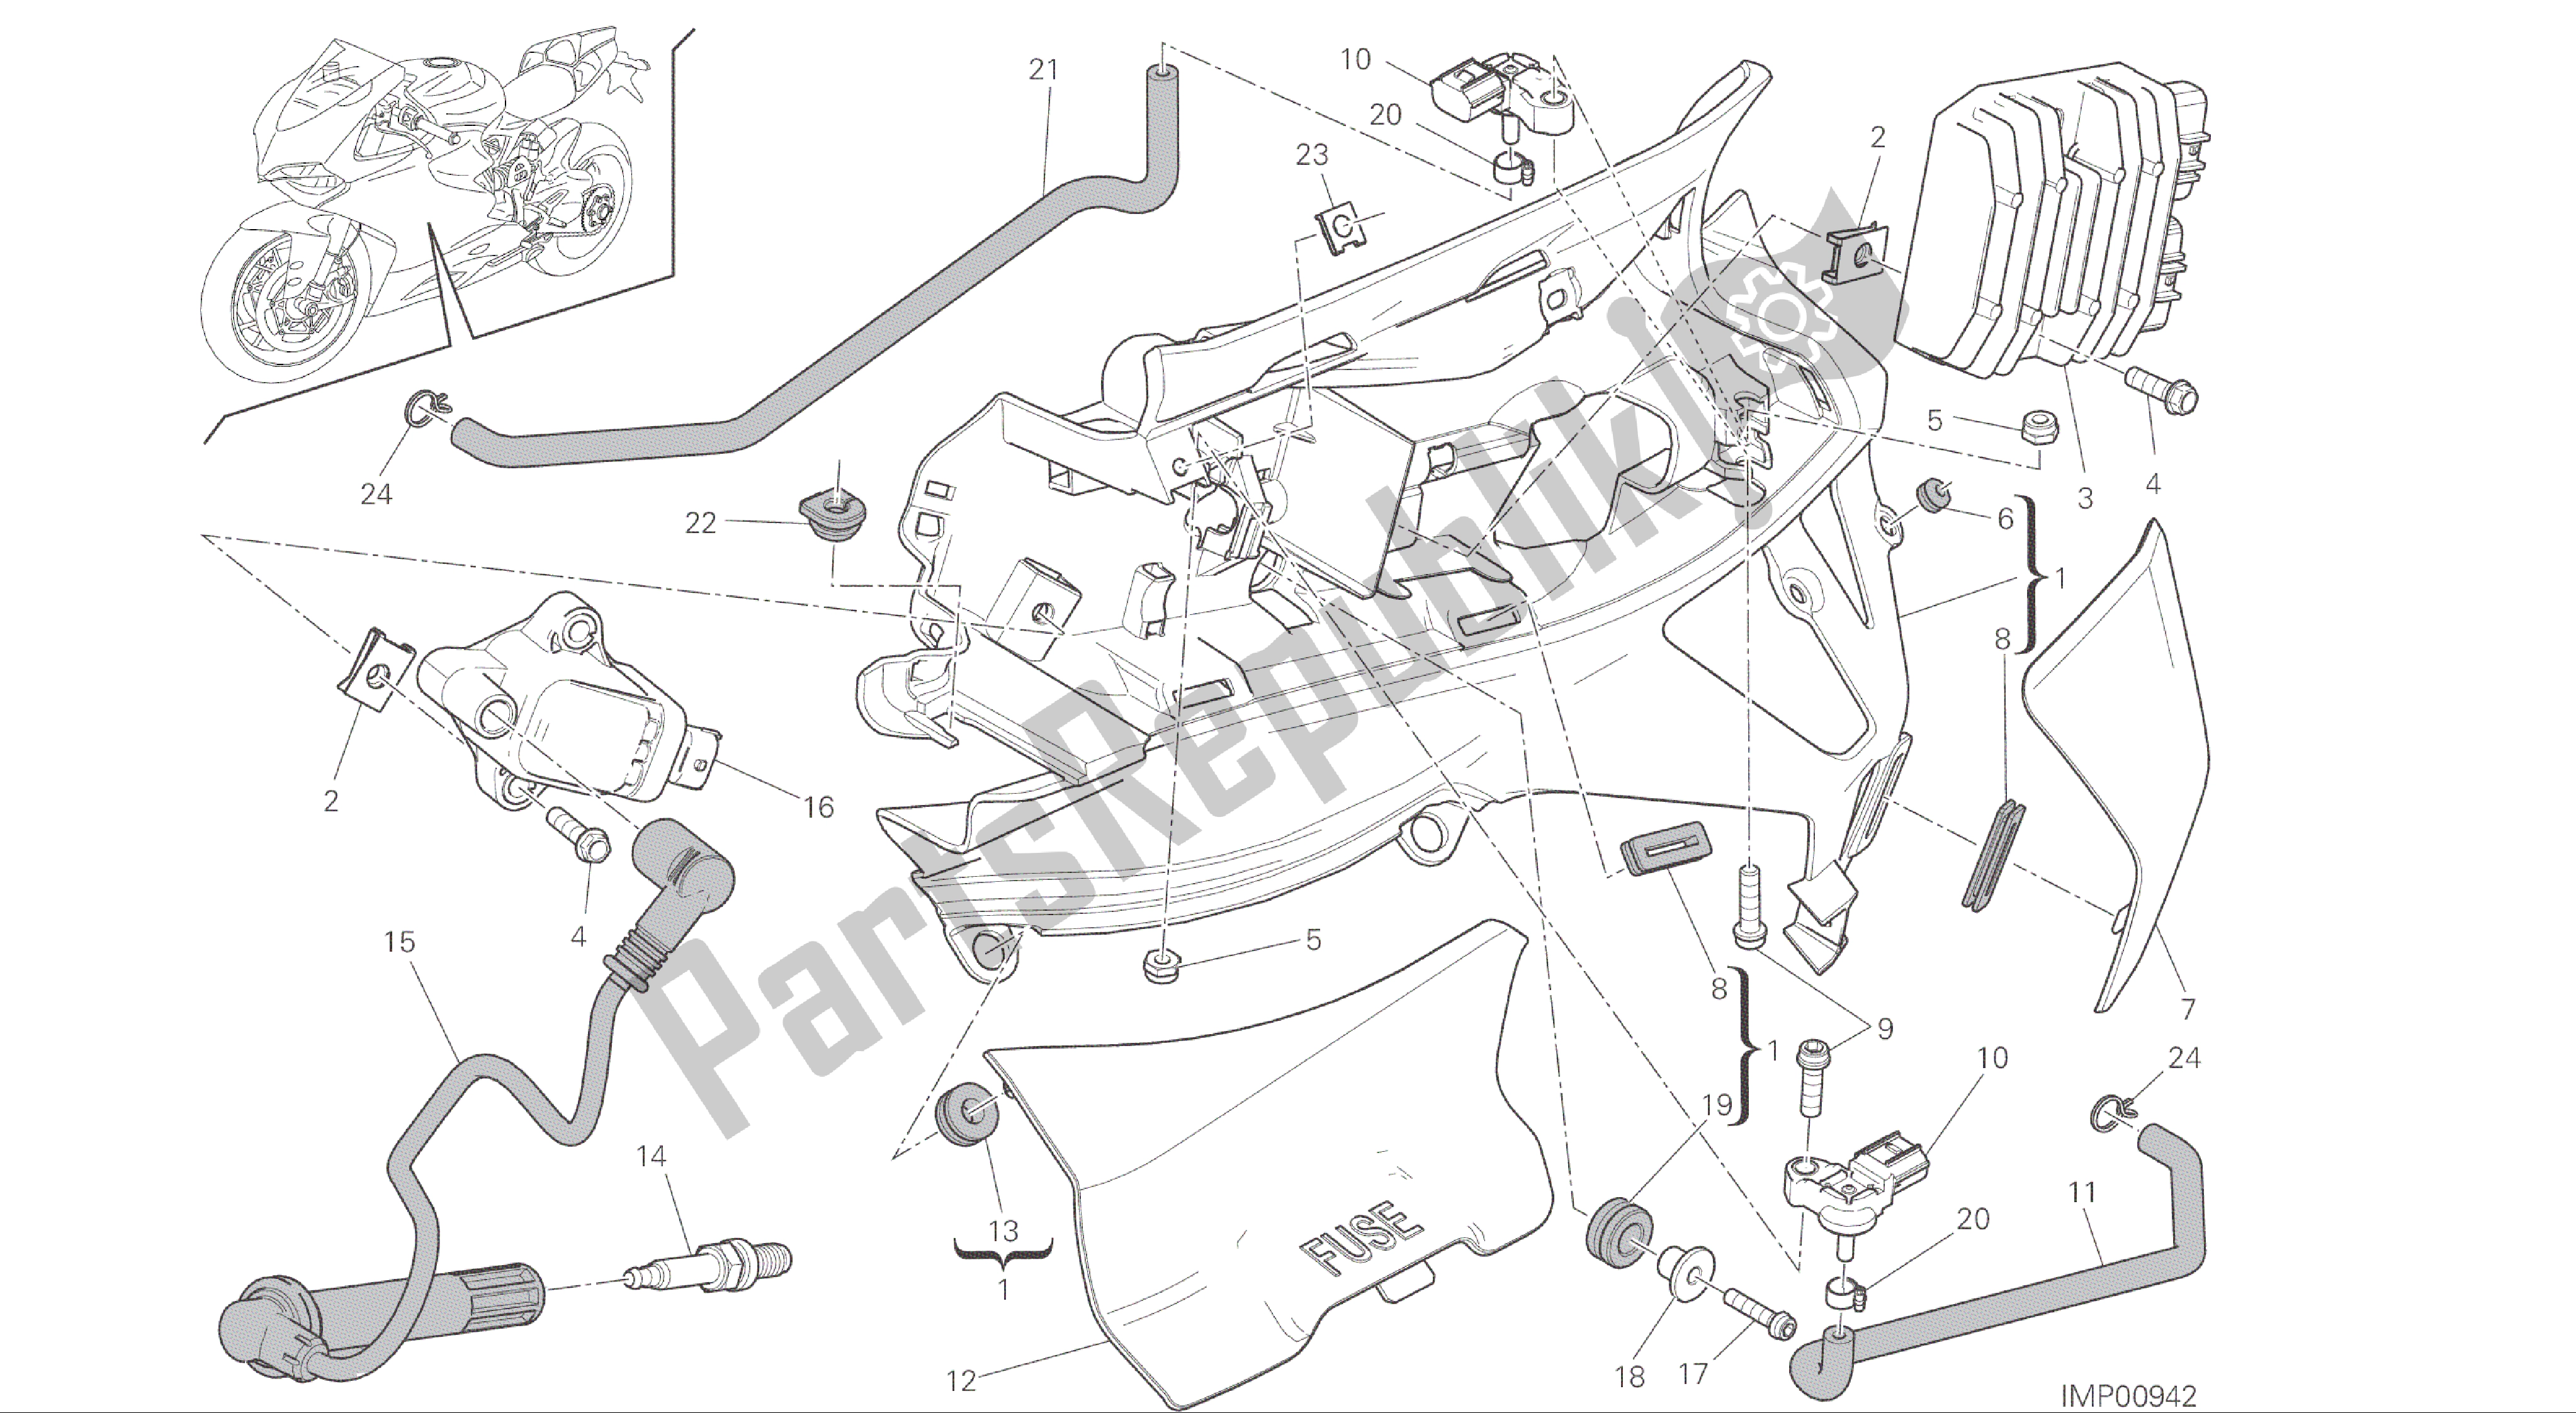 Todas las partes para Dibujo 018 - Impianto Elettrico Sinistro [mod: 1299; Xst: Aus, Eur, Fra, Jap, Twn] Grupo Eléctrico de Ducati Panigale ABS 1299 2016